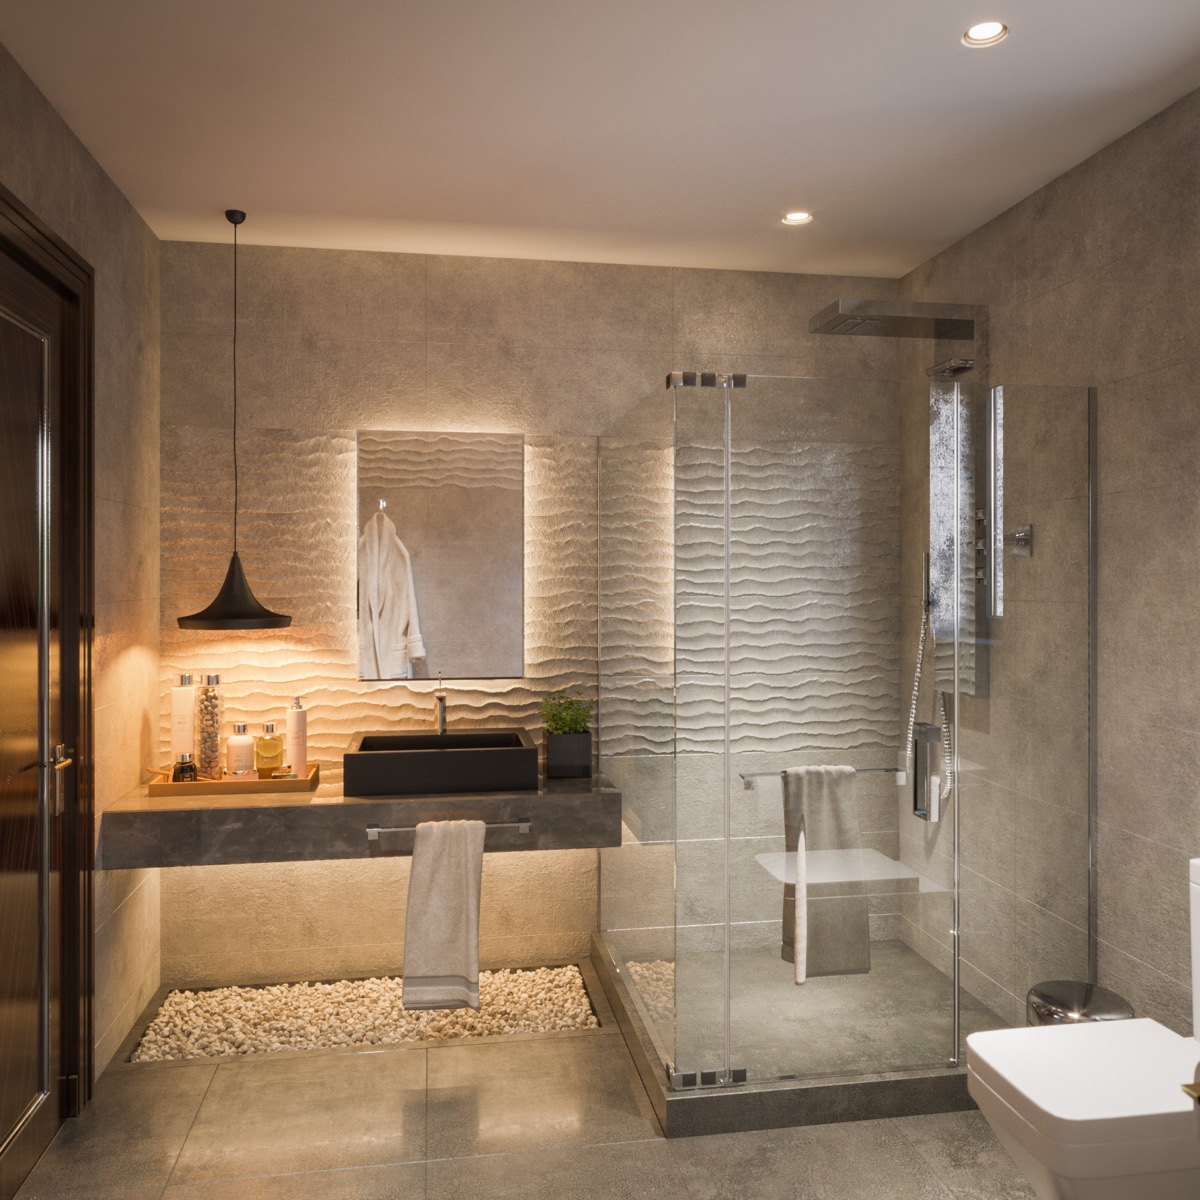 Những mẫu thiết kế phòng tắm đẹp mê mẩn cho ngôi nhà hiện đại